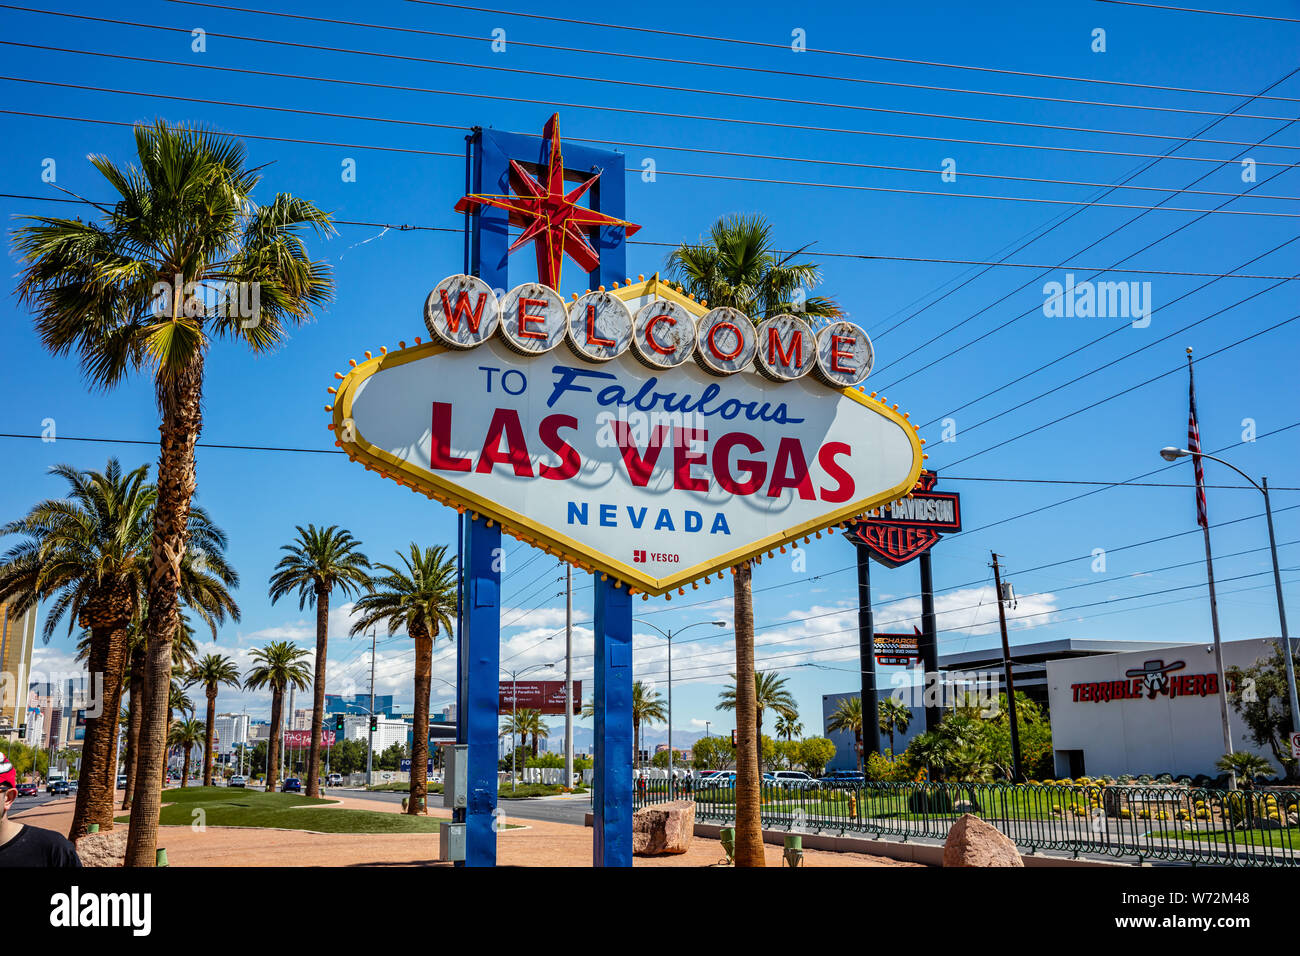 Las Vegas, Nevada, USA. 29 mai, 2019. Panneau Welcome to Fabulous Las Vegas. Journée de printemps ensoleillée, ciel bleu Banque D'Images